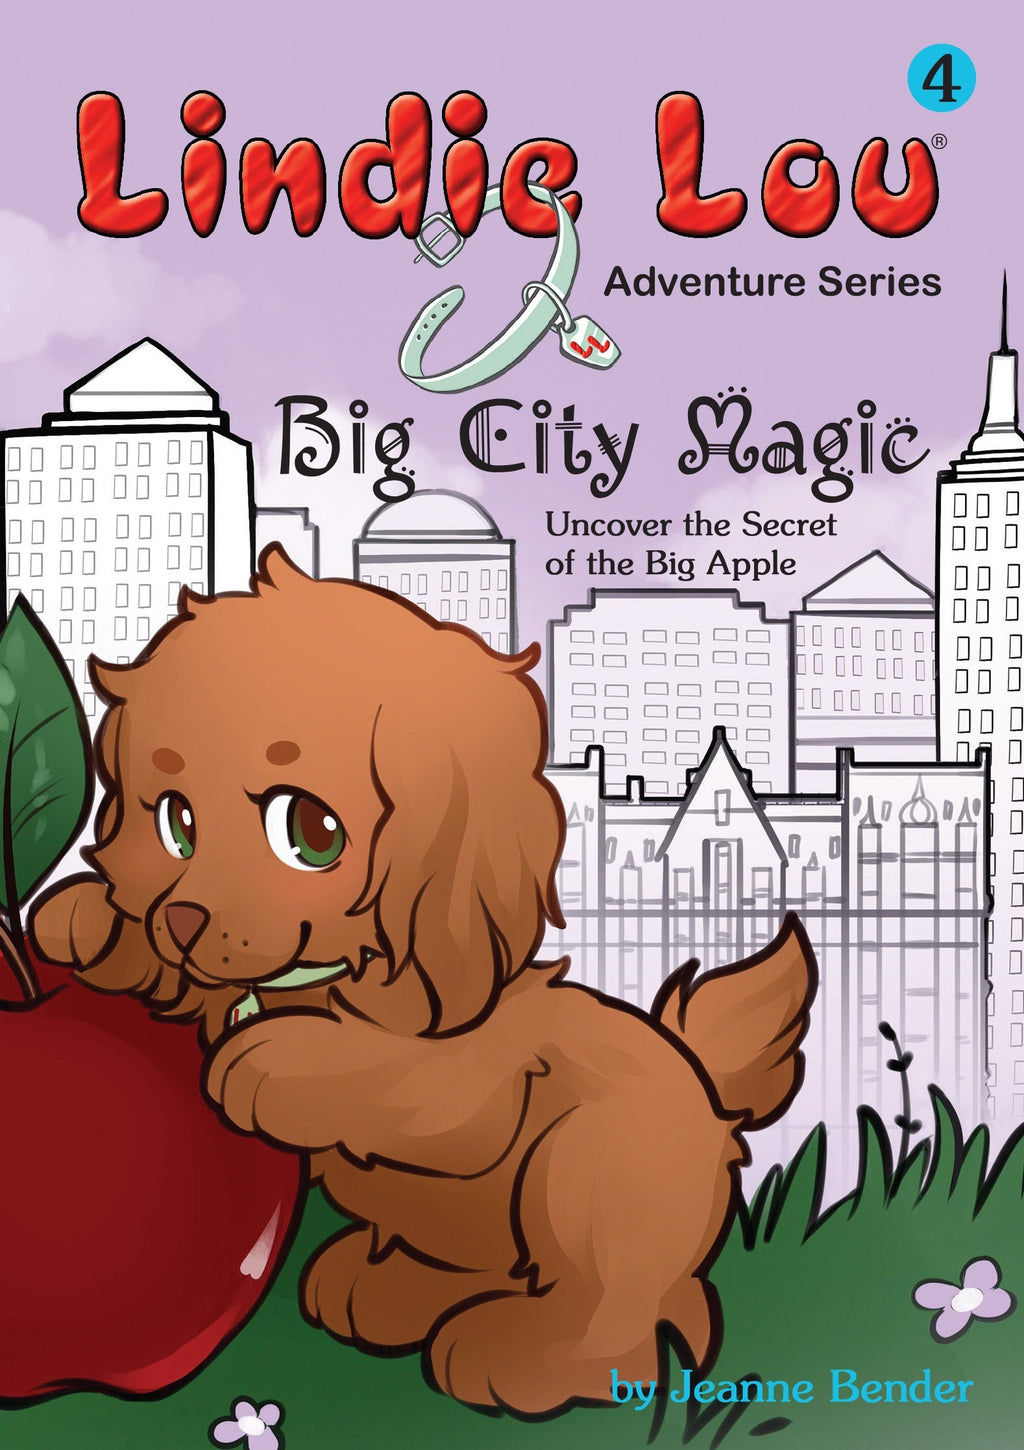 Big City Magic - Lindie Lou Adventure Series Book 4